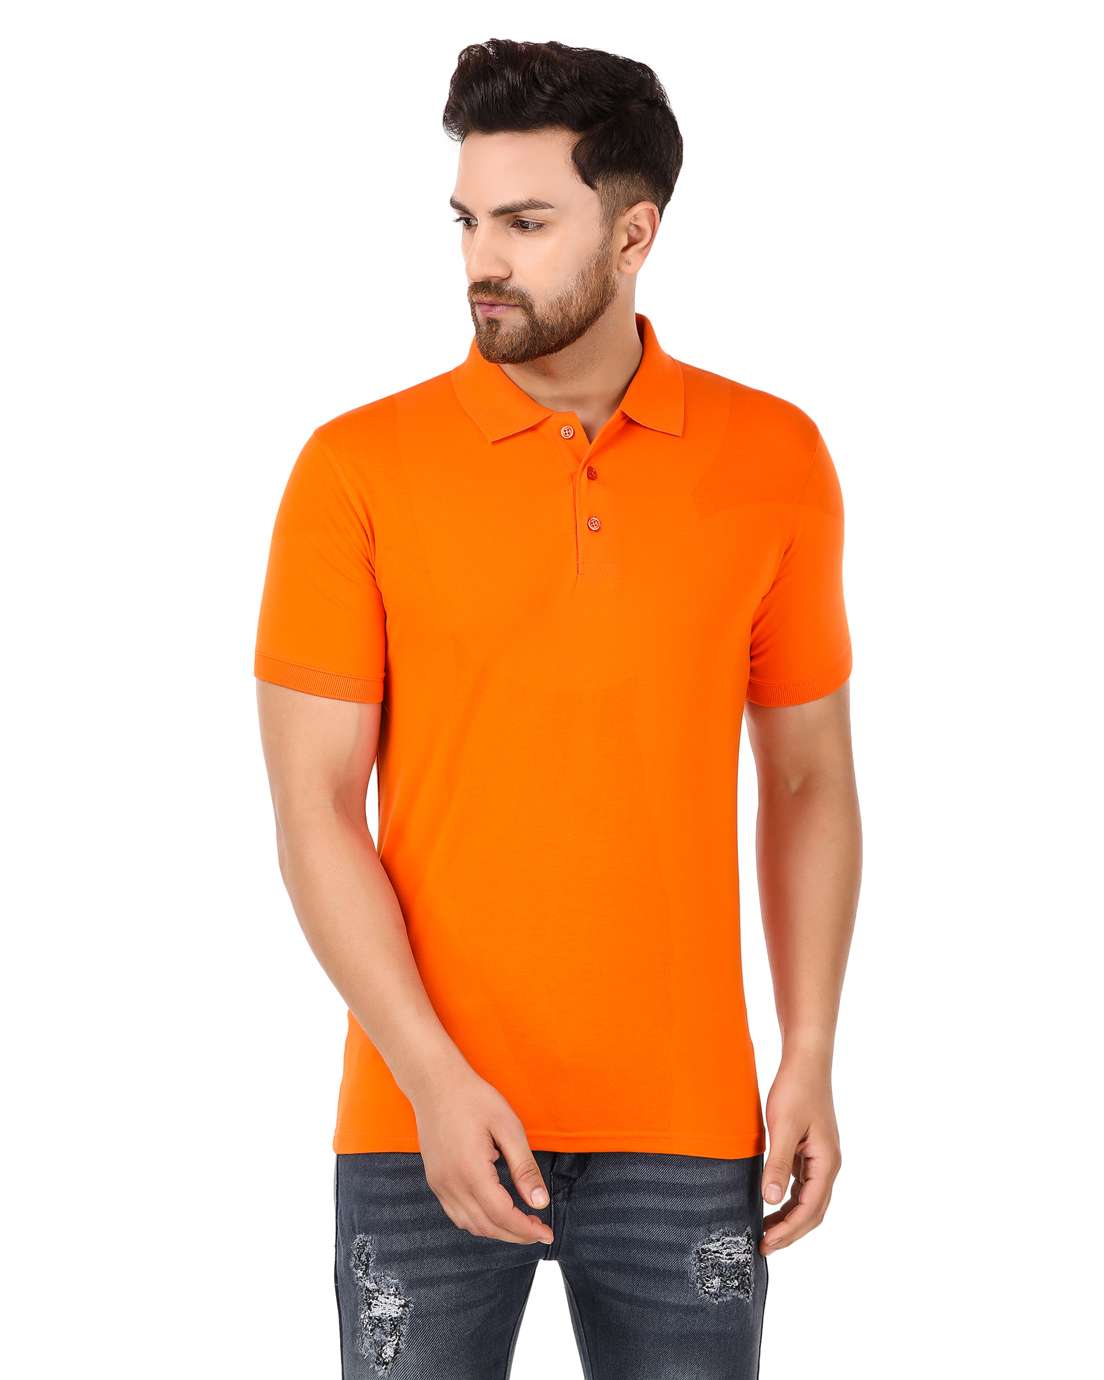 Orange Color T-Shirt